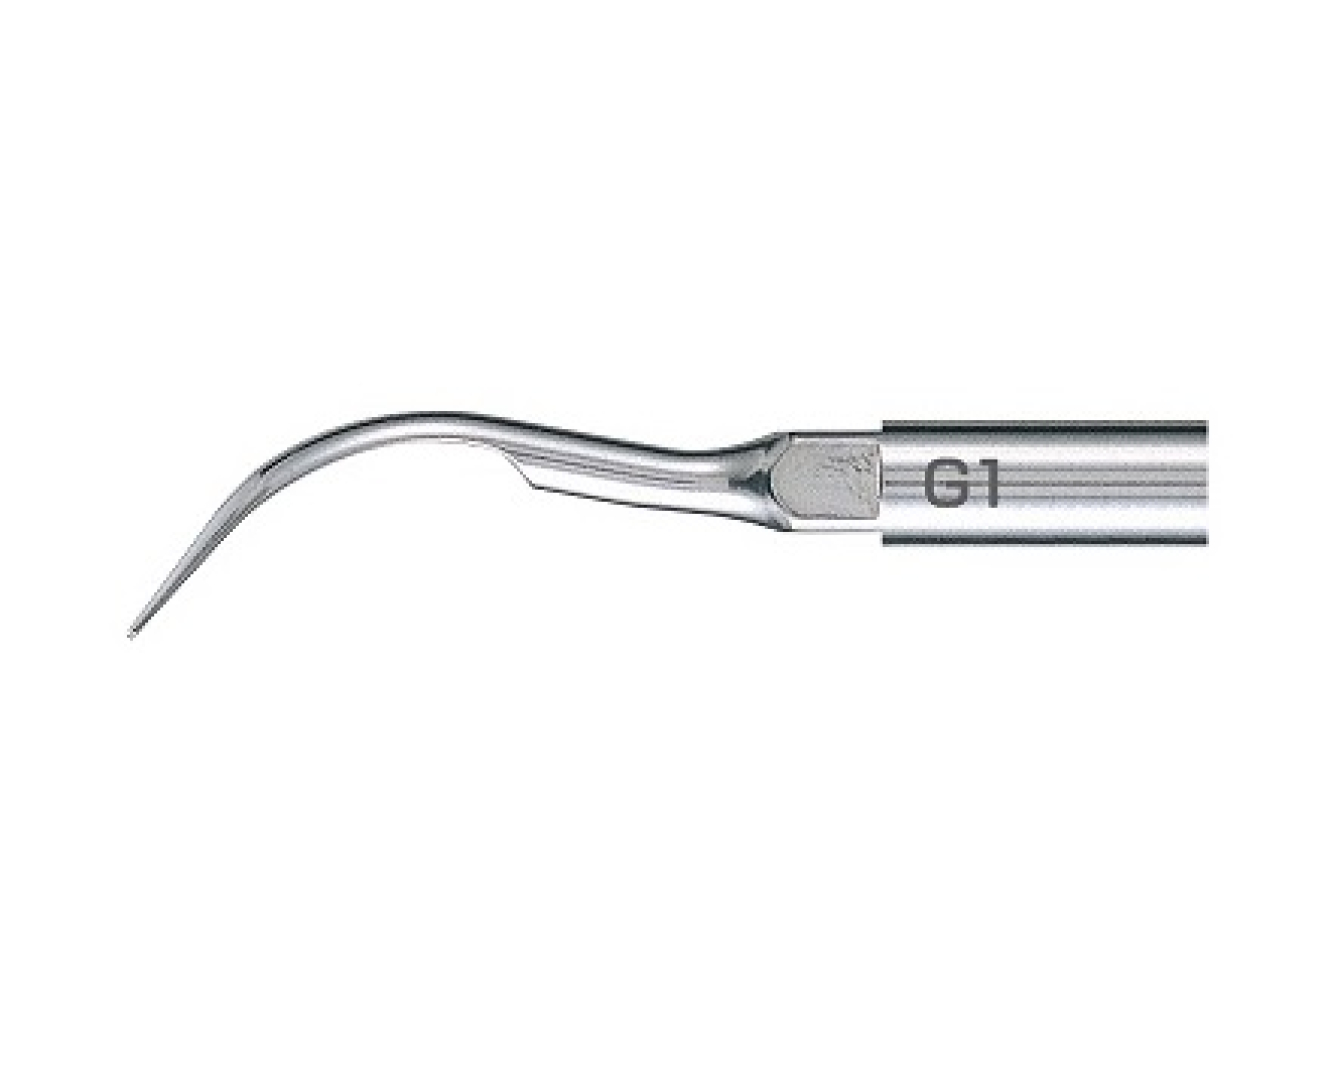 G1 Стоматологическая насадка к скалеру Varios, для удаления наддесневого камня и отложений с передних зубов и с шеек, NSK (Япония)